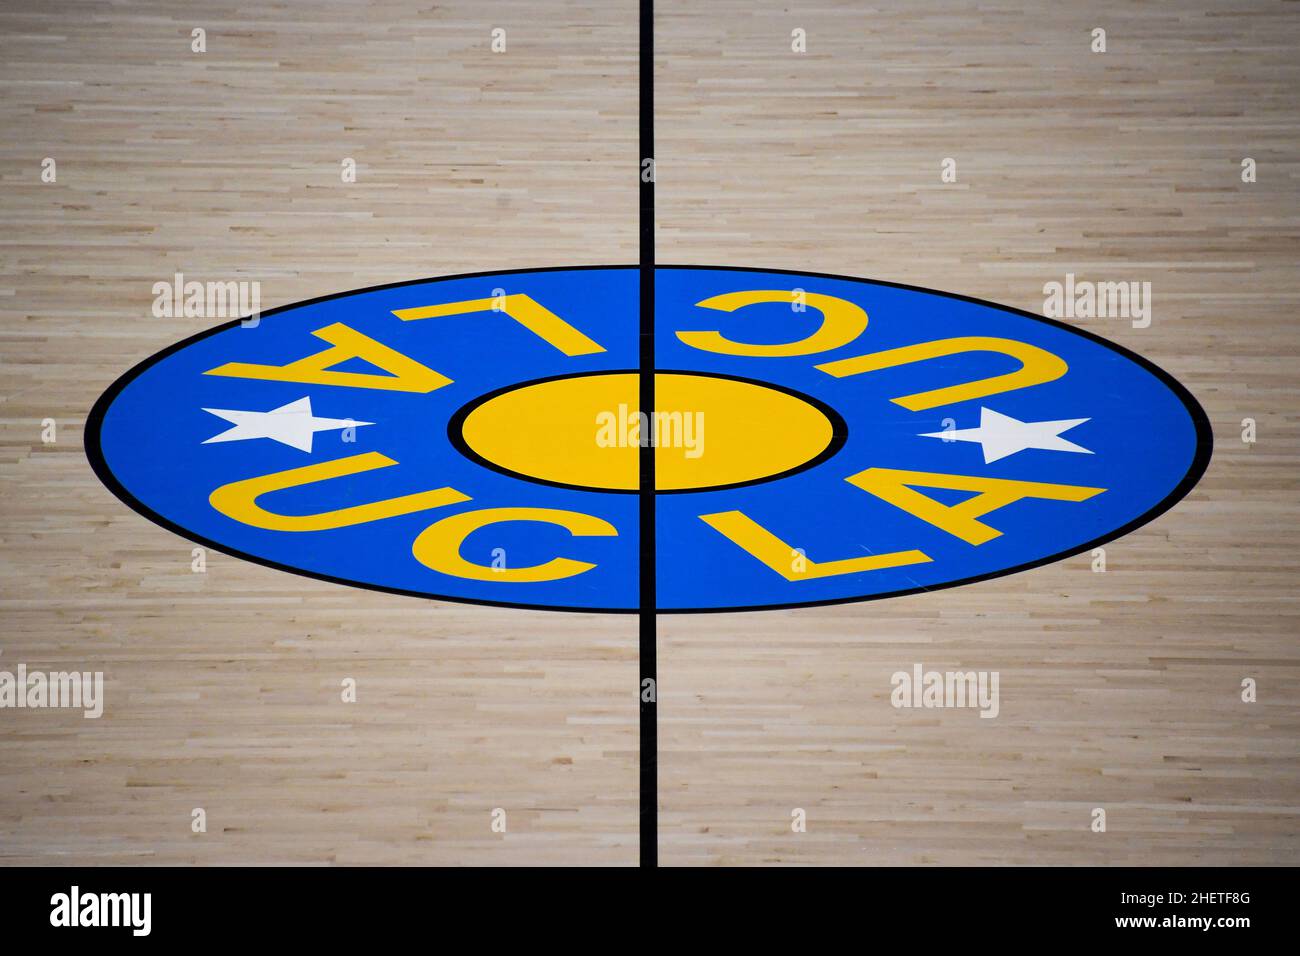 Vue détaillée du logo de l'UCLA en milieu de terrain avant un match de basket-ball de la NCAA entre les Bruins de l'UCLA et le long Beach State 49ers, le jeudi 6 janvier 2 Banque D'Images